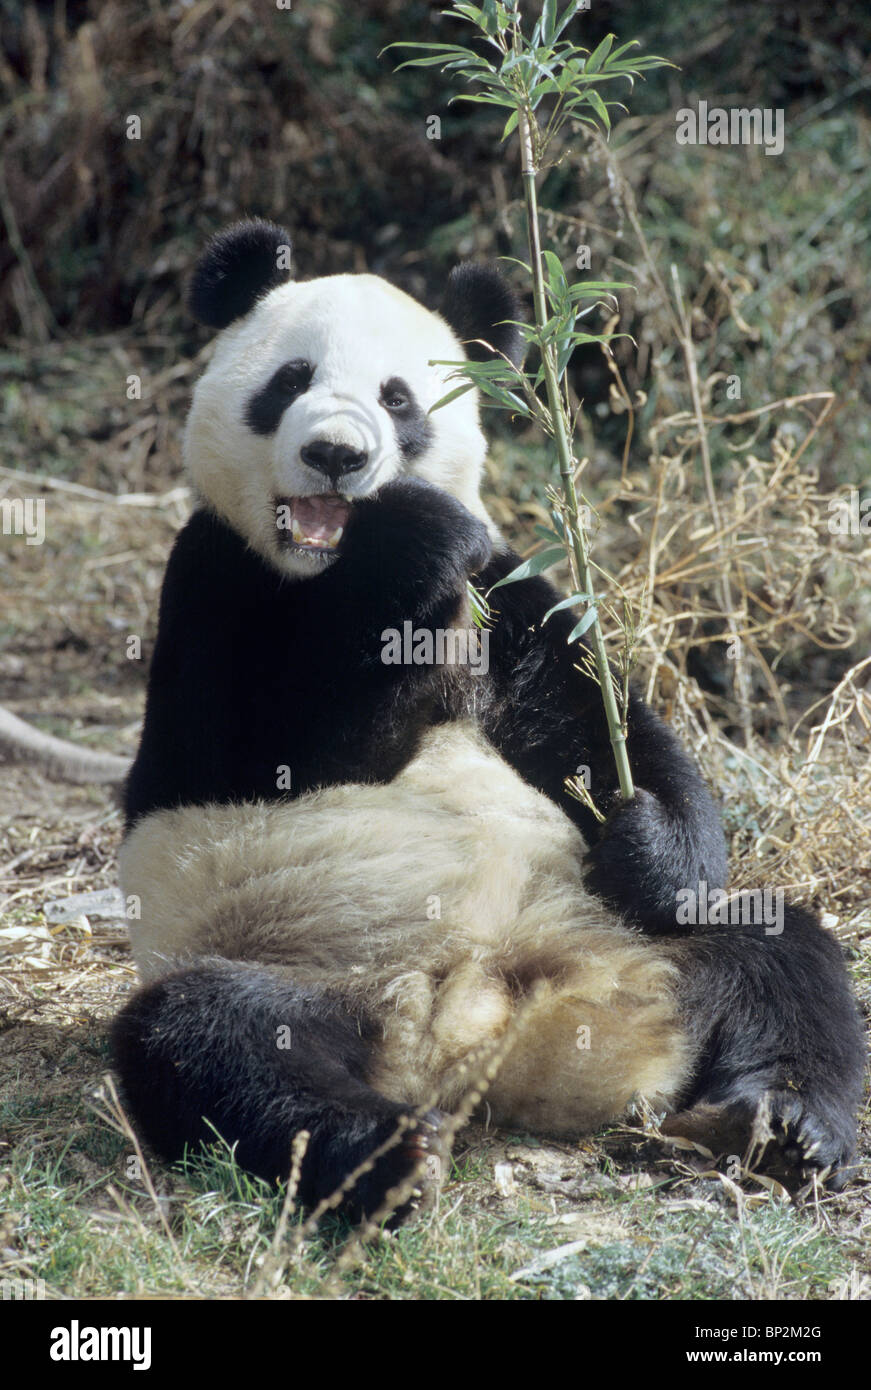 Panda gigante sentado a alimentarse de bambú, Wolong, China Foto de stock